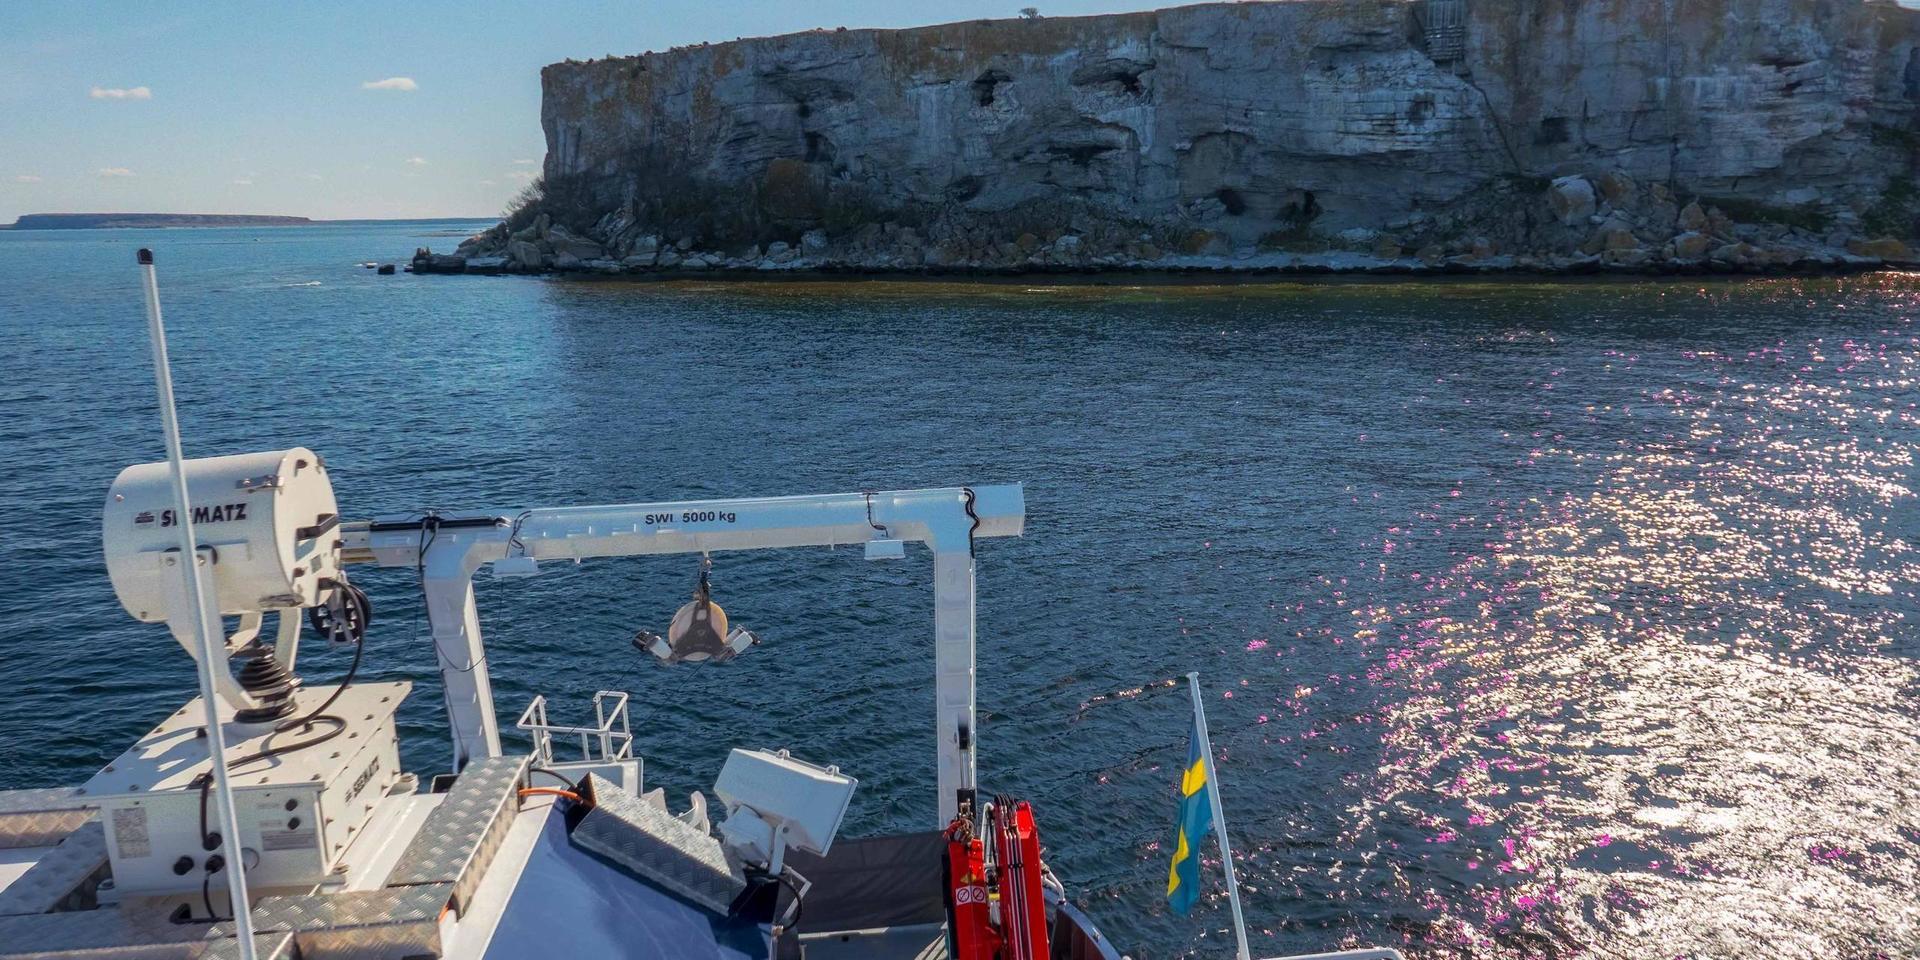 Stora Karlsös klippor sedda från forskningsfartyget R/V Electra, som användes för provtagningarna under studien.